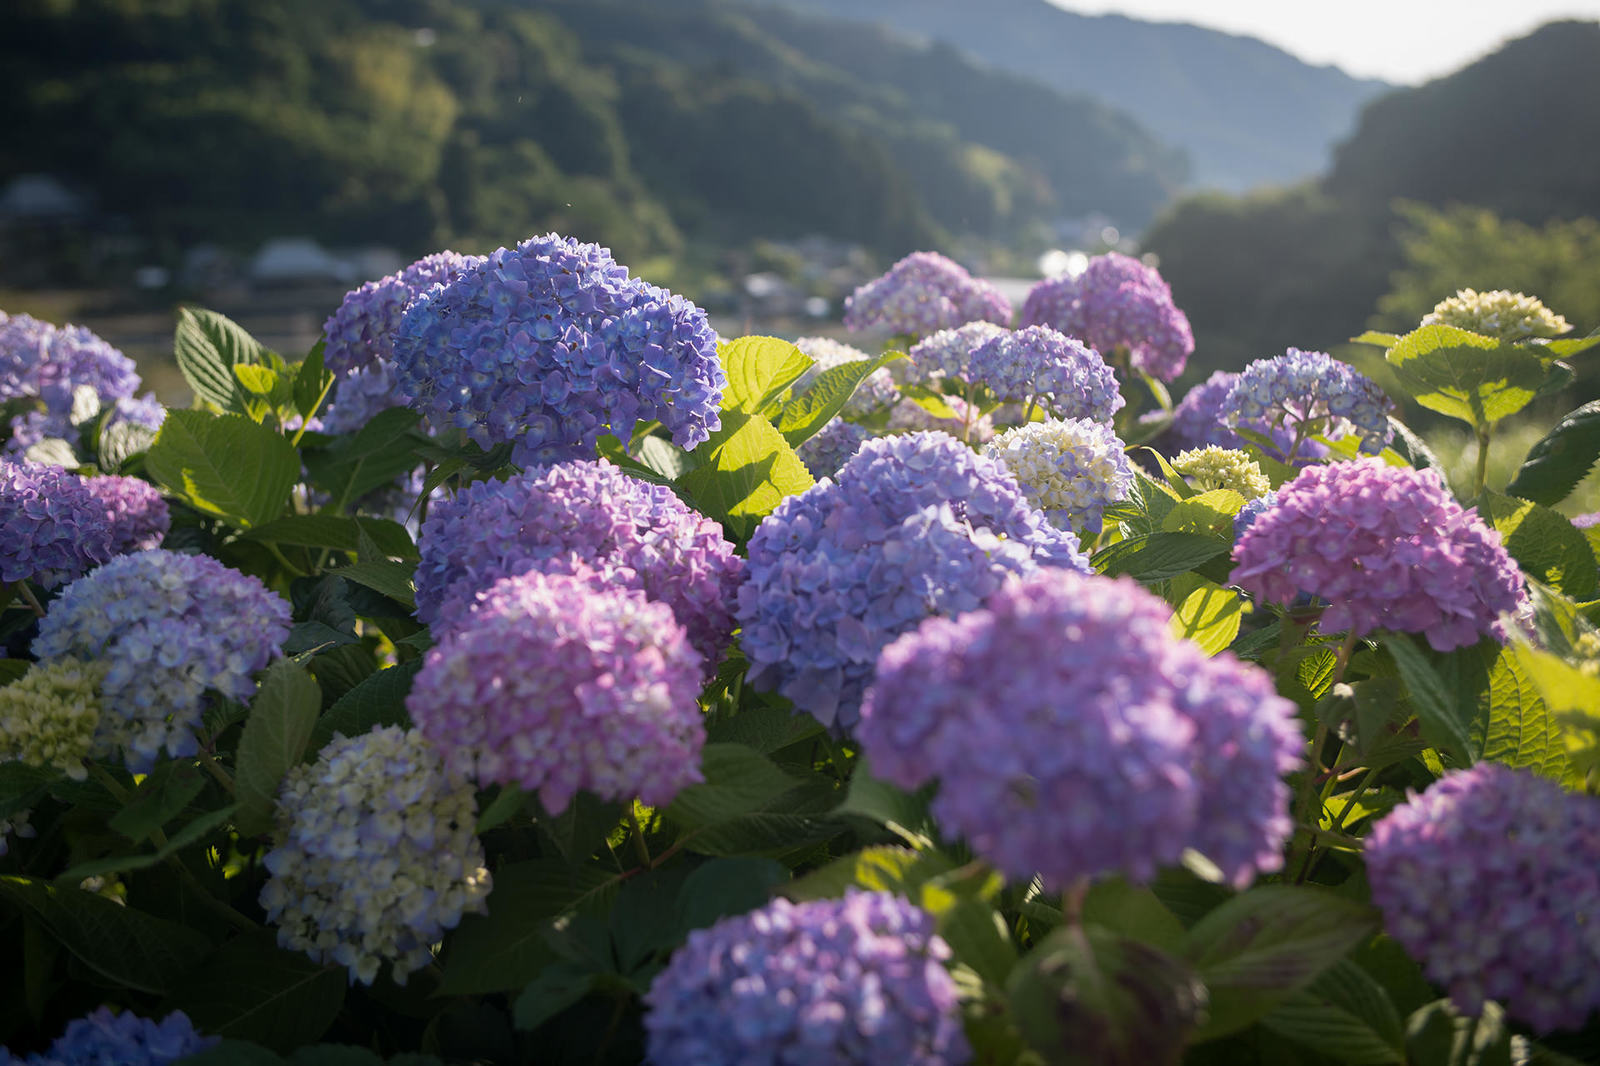 早朝の紫陽花